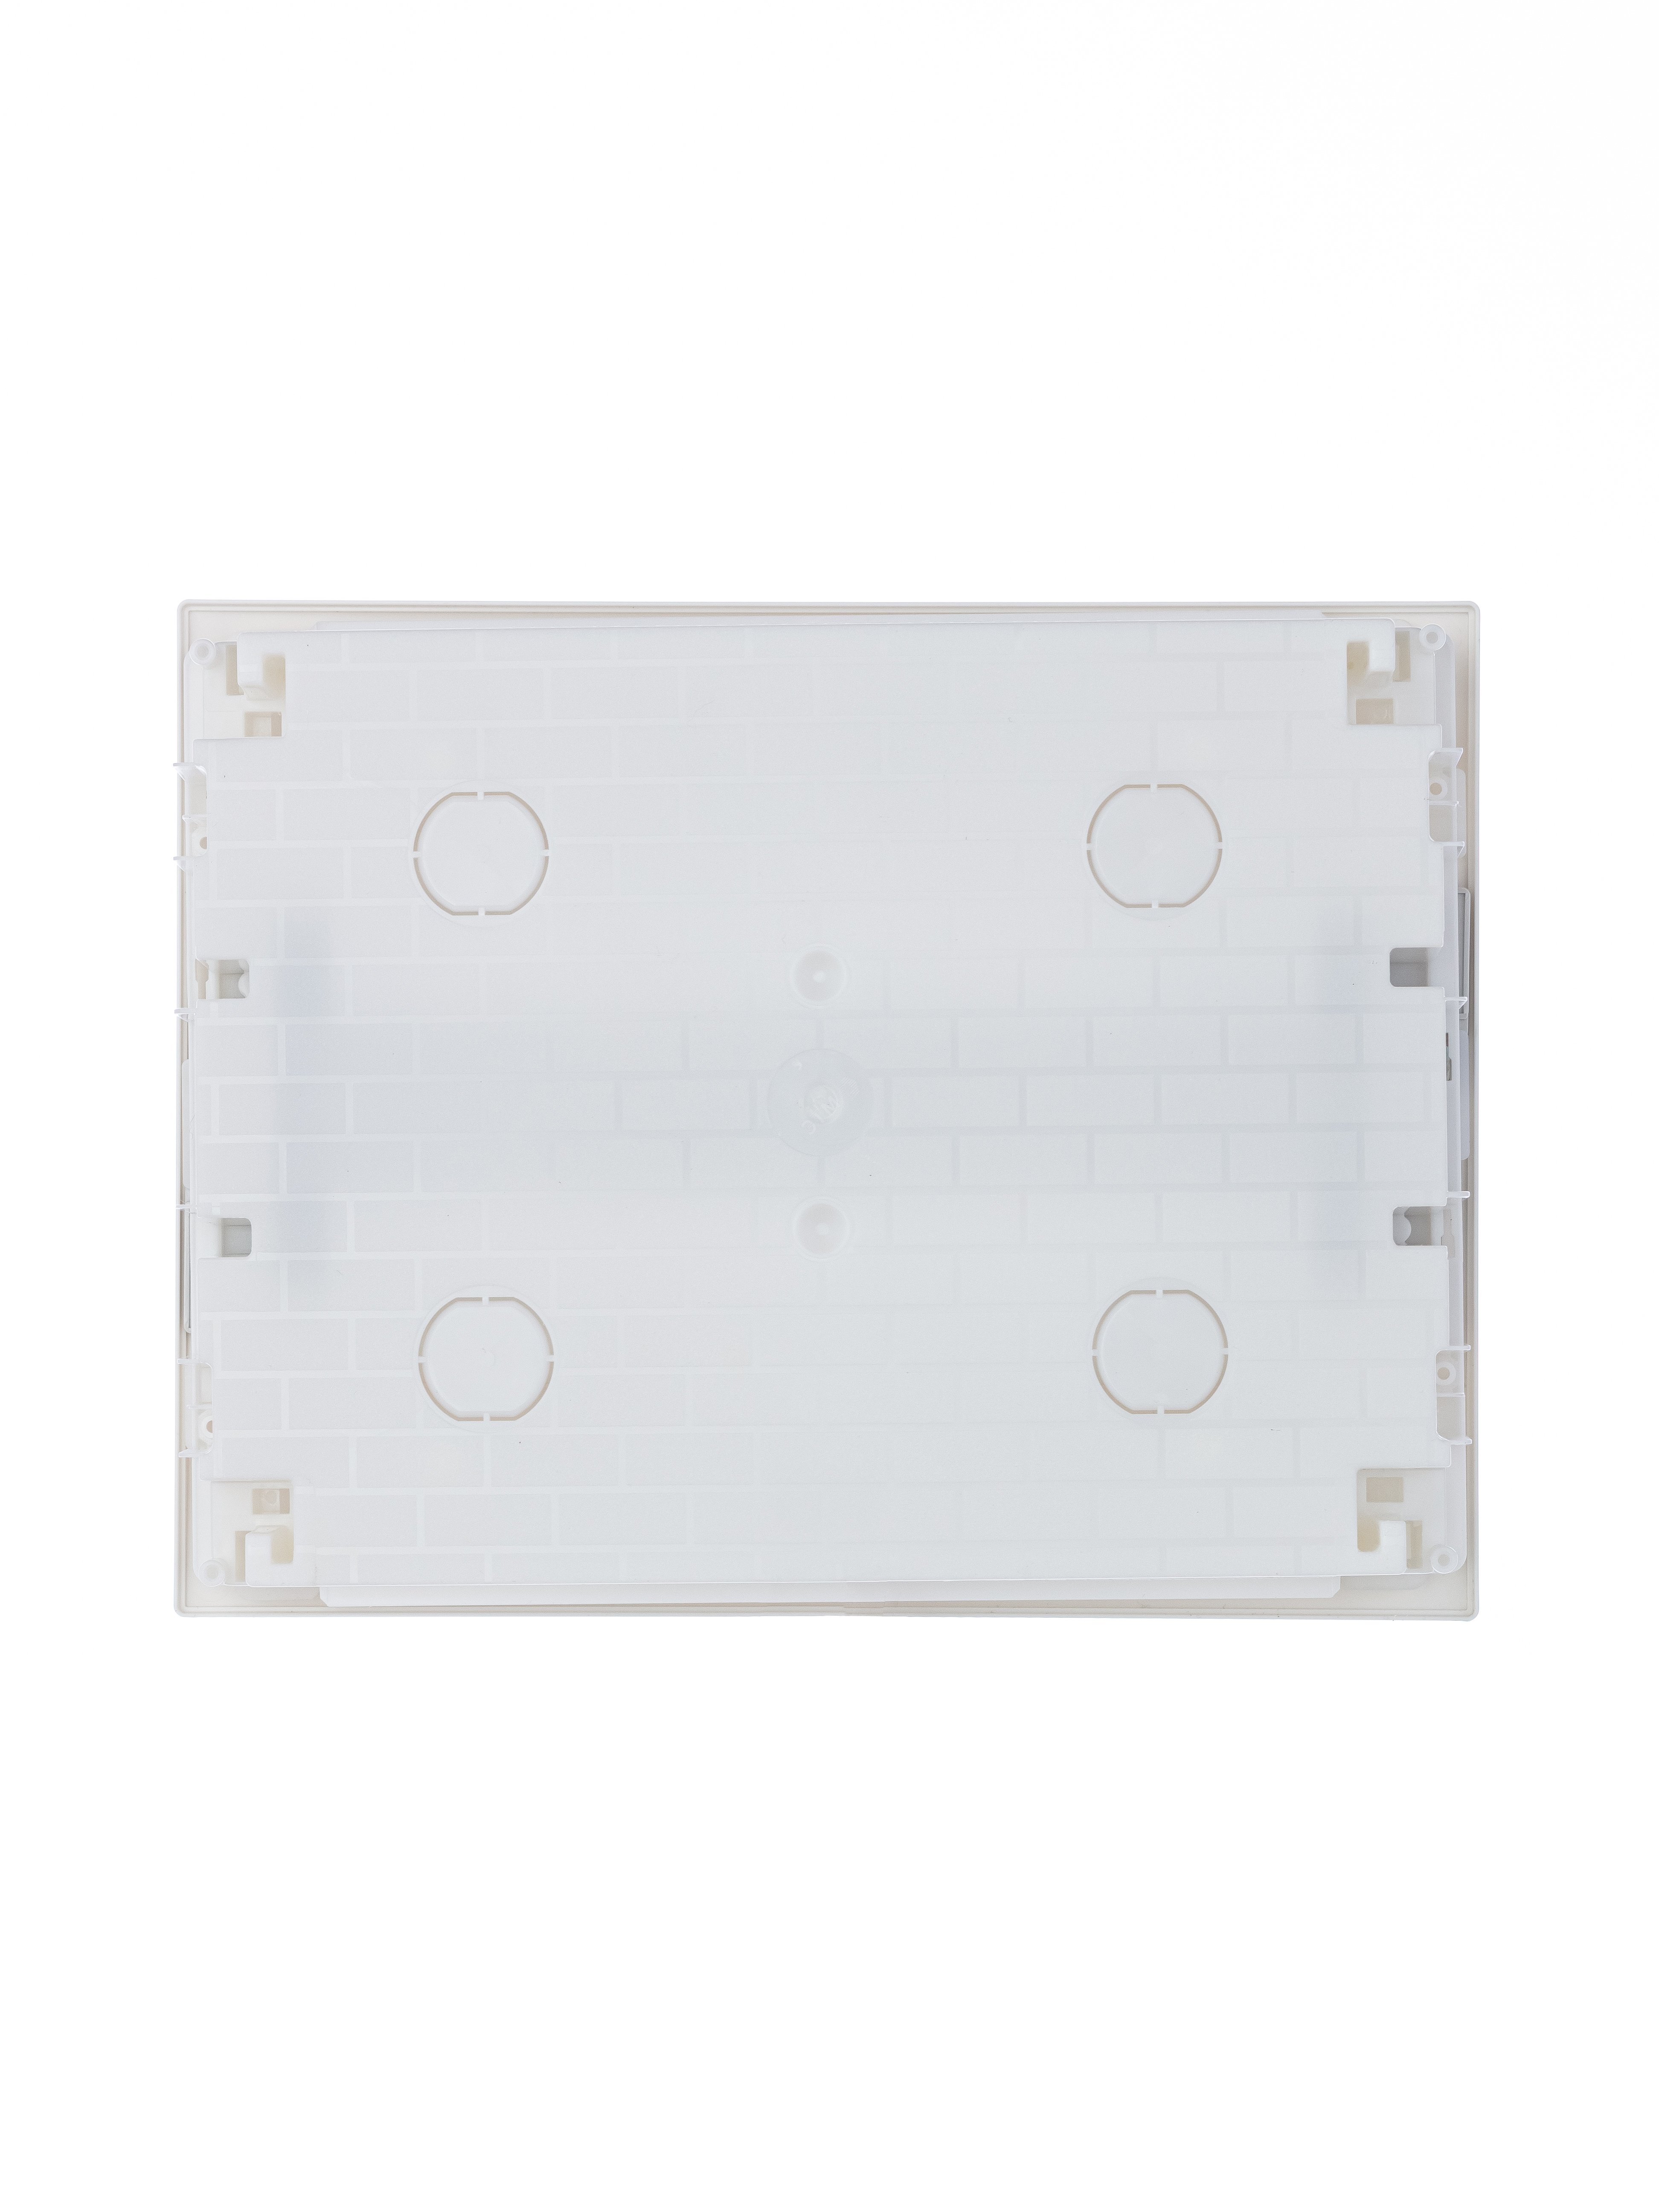 Щит распределительный встраиваемый ЩРв-п-12 пластиковый Mistral41 серая прозрачная дверь с клеммами IP41 (41A12X13B) 1SLM004101A2203 ABB - превью 5